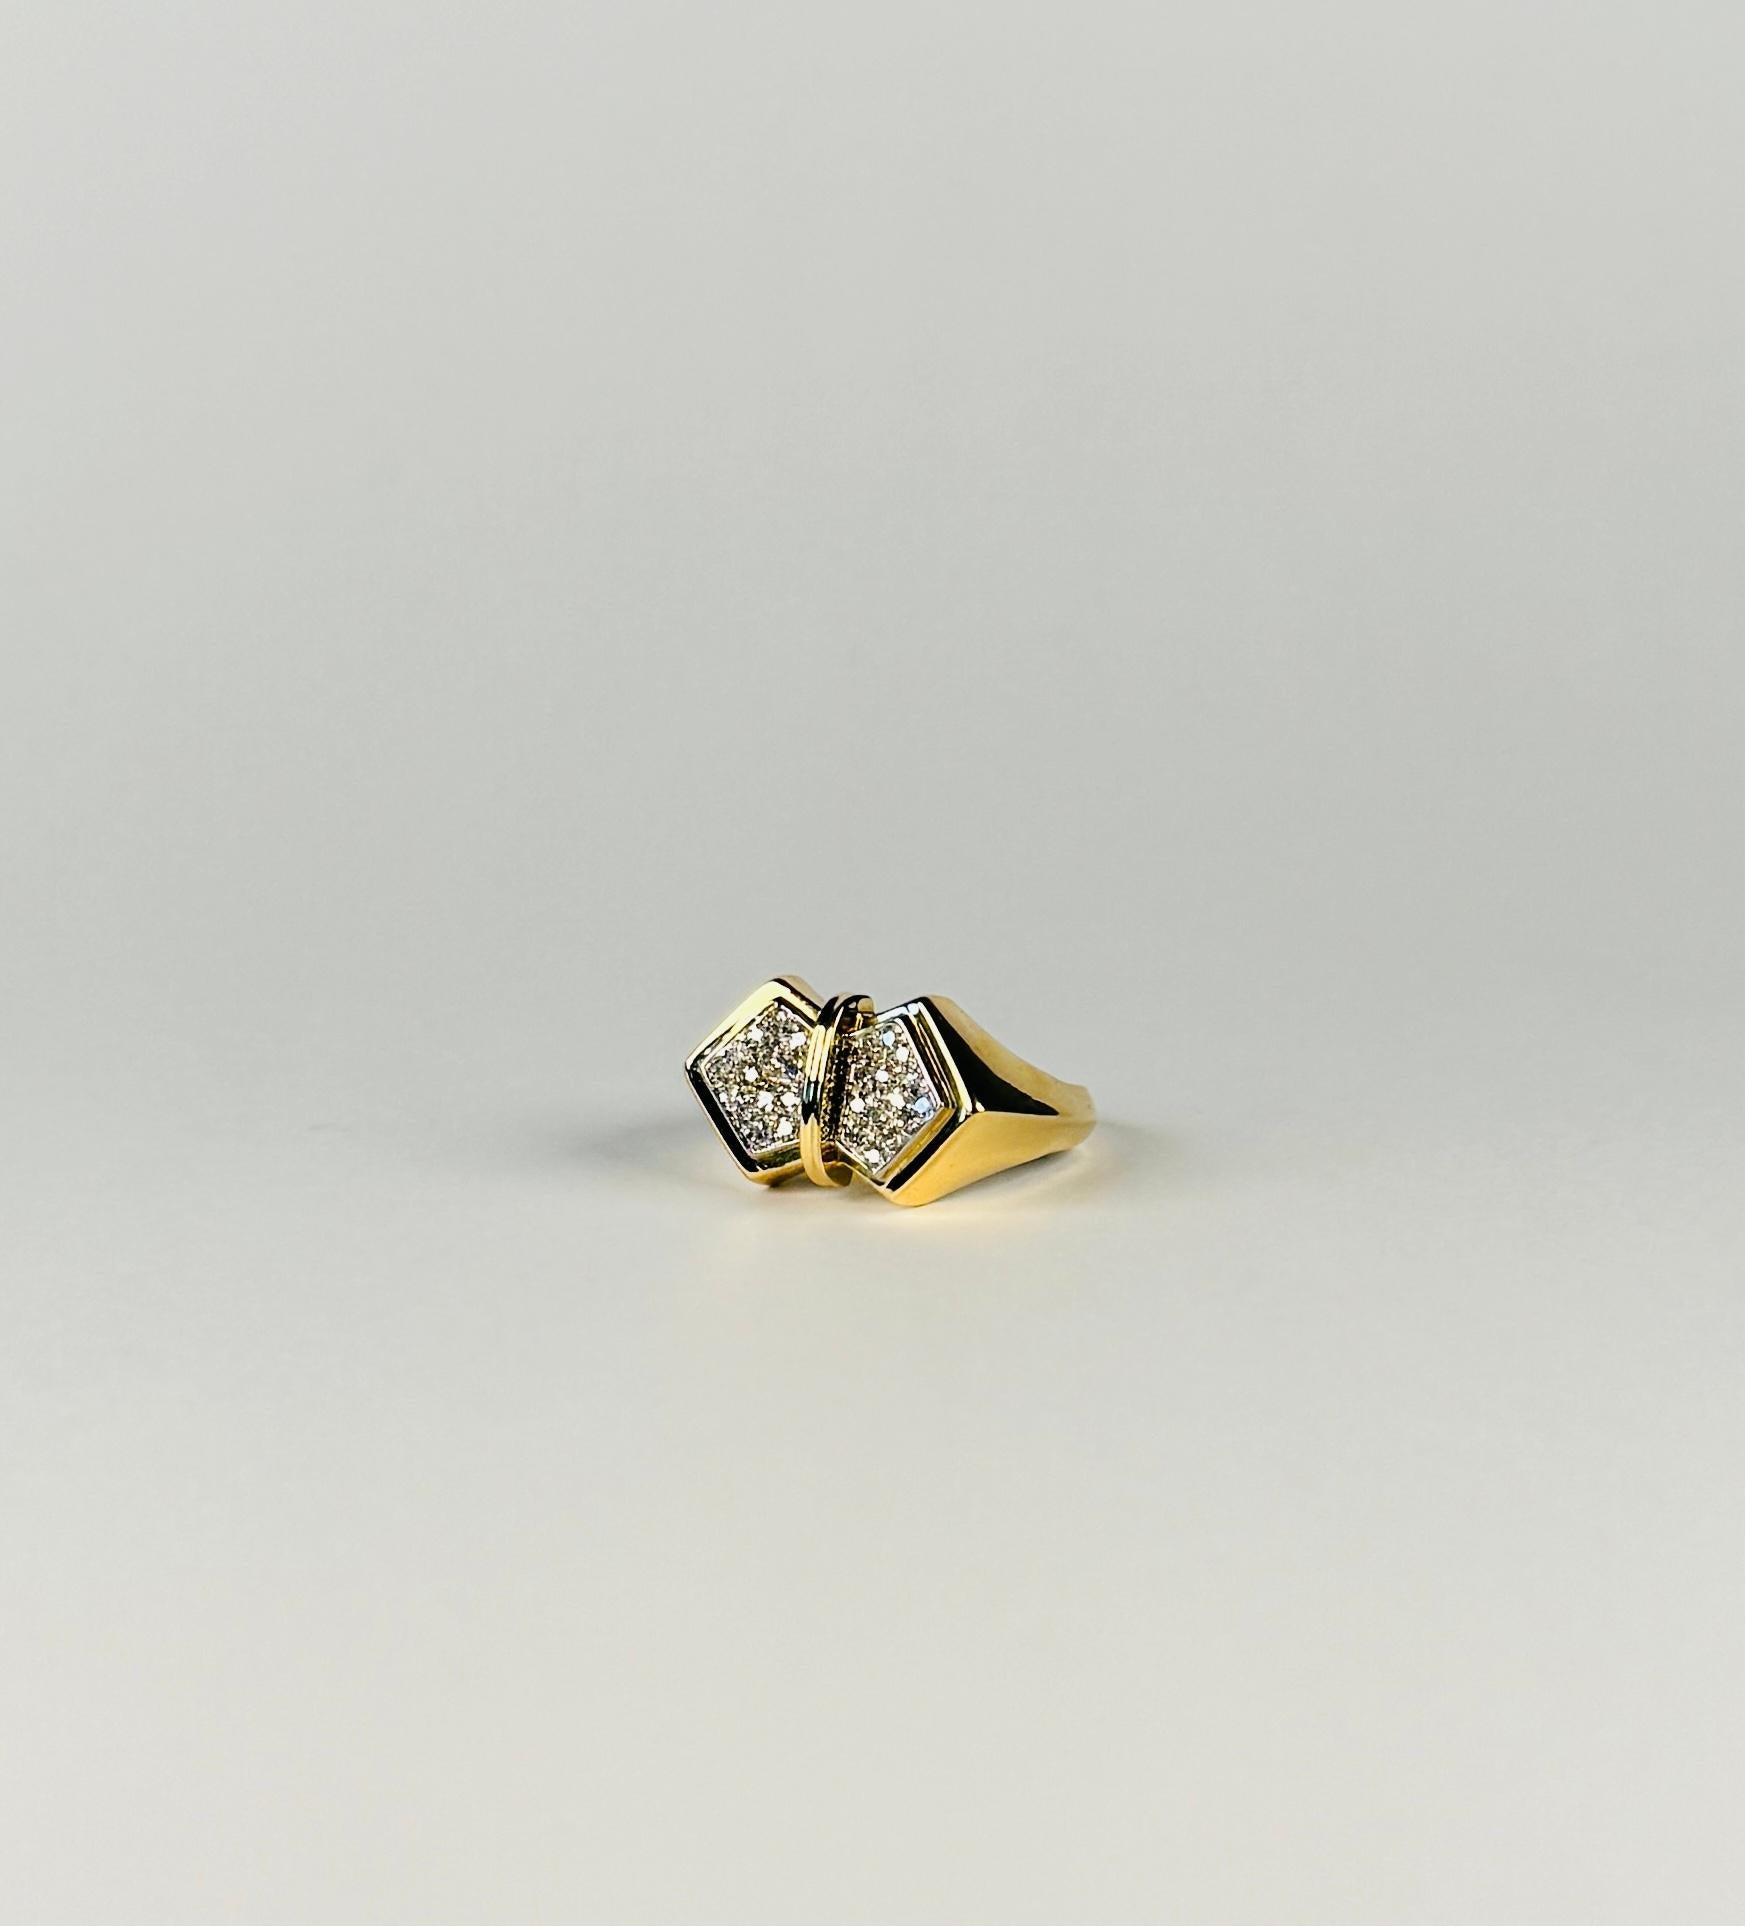 Cette bague papillon présente un design et un style exquis et est réalisée avec un savoir-faire artisanal absolu. Son design captivant met en valeur 28 diamants de taille unique. Cette bague d'origine italienne est en or jaune 18 carats. La